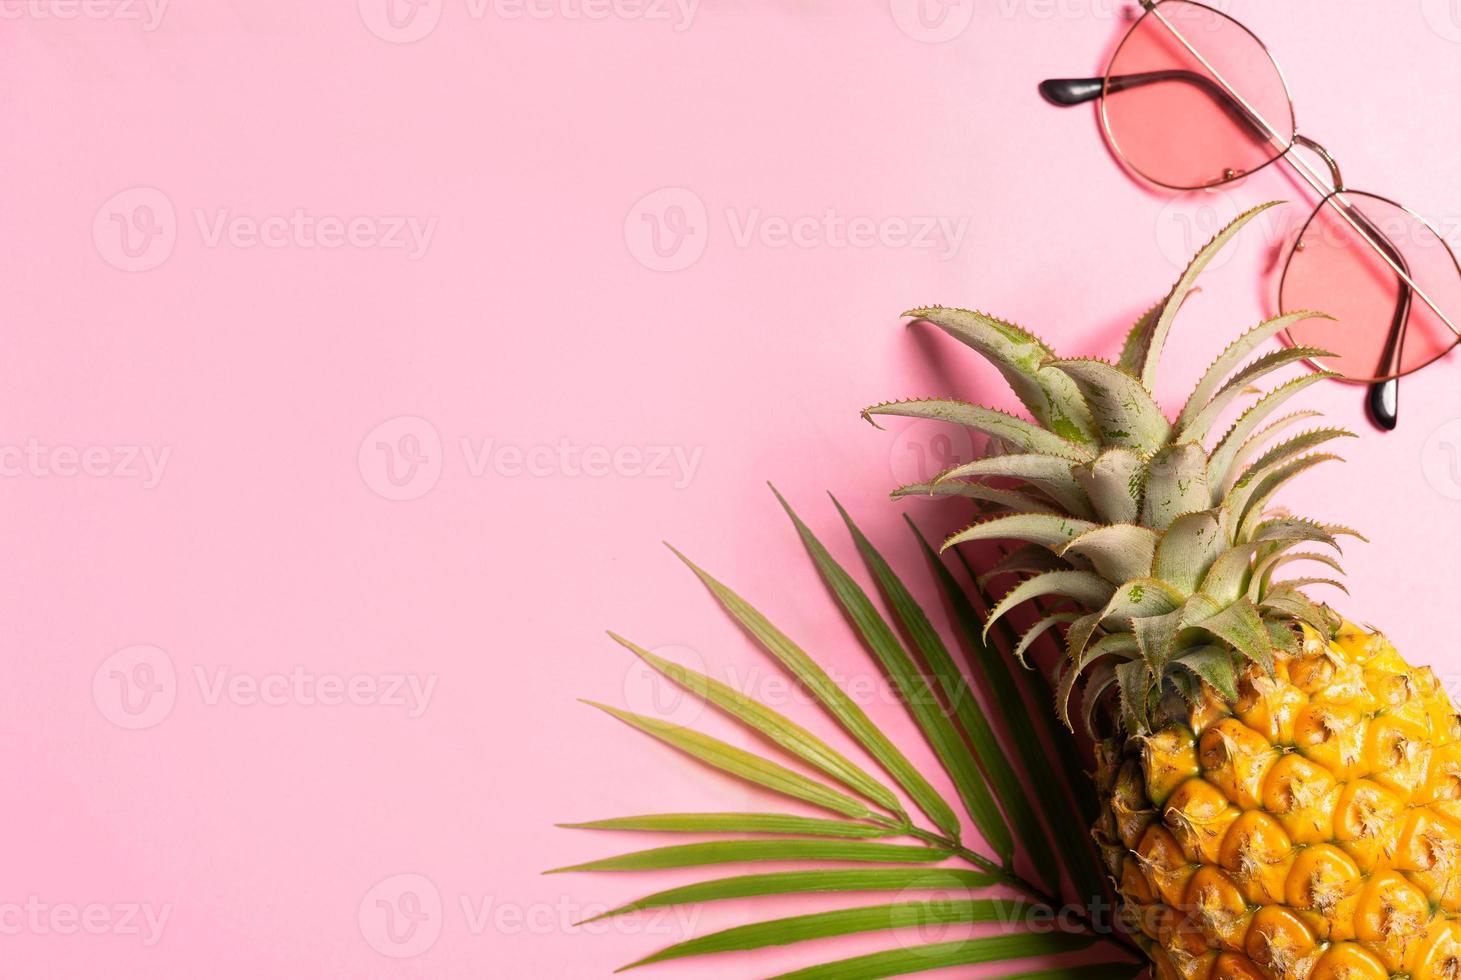 concept d'été avec ananas, lunettes de soleil et feuille de palmier sur fond rose photo